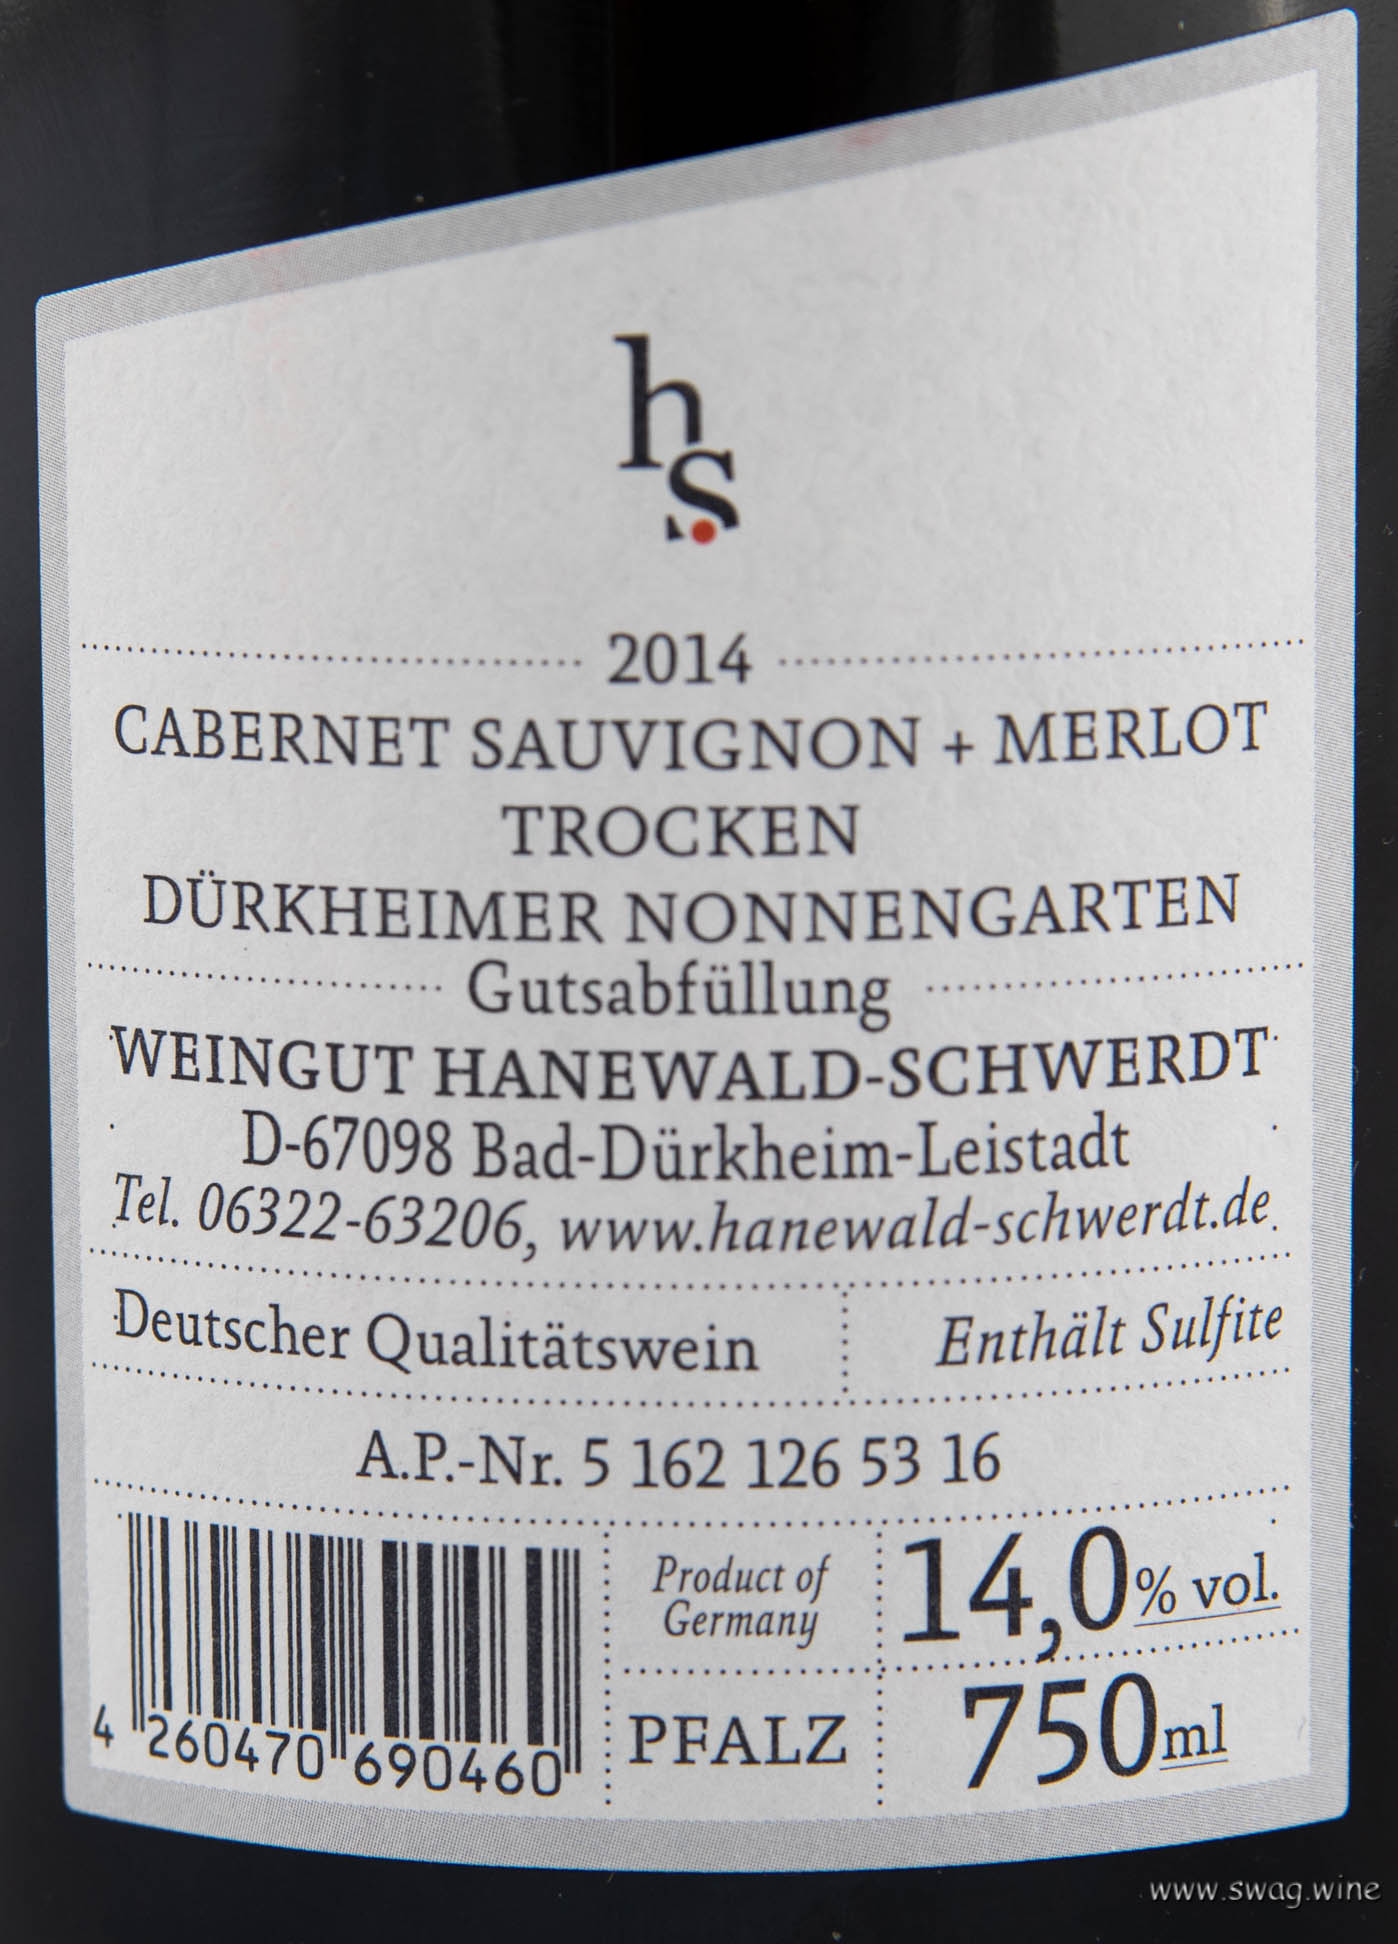 Zweihänder Rotwein Cuvee Cabernet Sauvignon Merlot Hanewald-Schwerdt Pfalz Swagwine